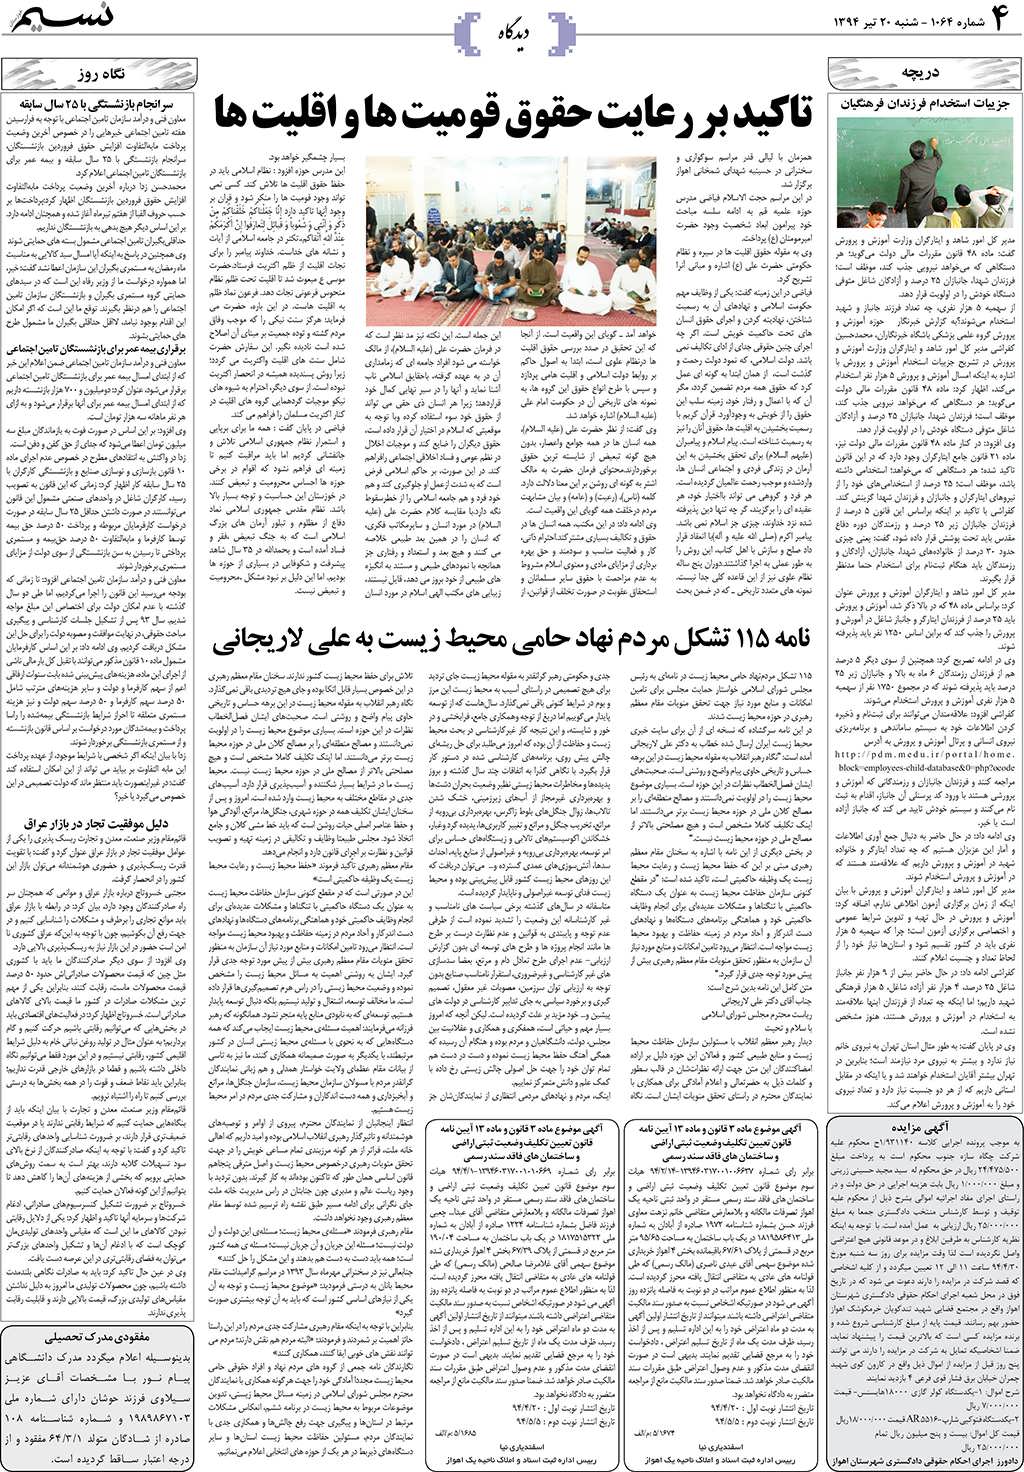 صفحه دیدگاه روزنامه نسیم شماره 1064